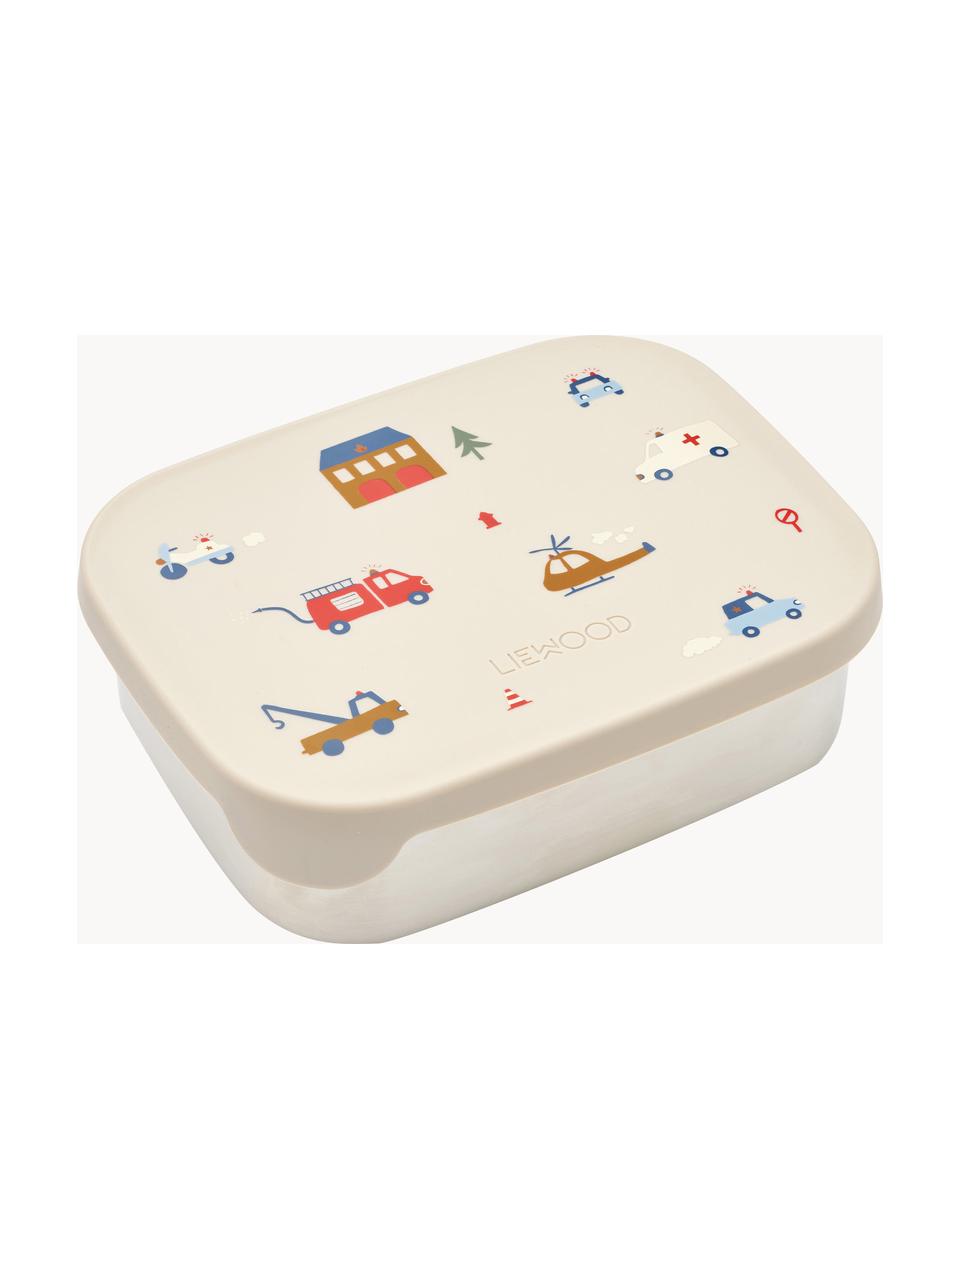 Lunchbox Arthur, 18/8 edelstaal, siliconen, Gebroken wit, lichtbeige, B 17 x H 6 cm